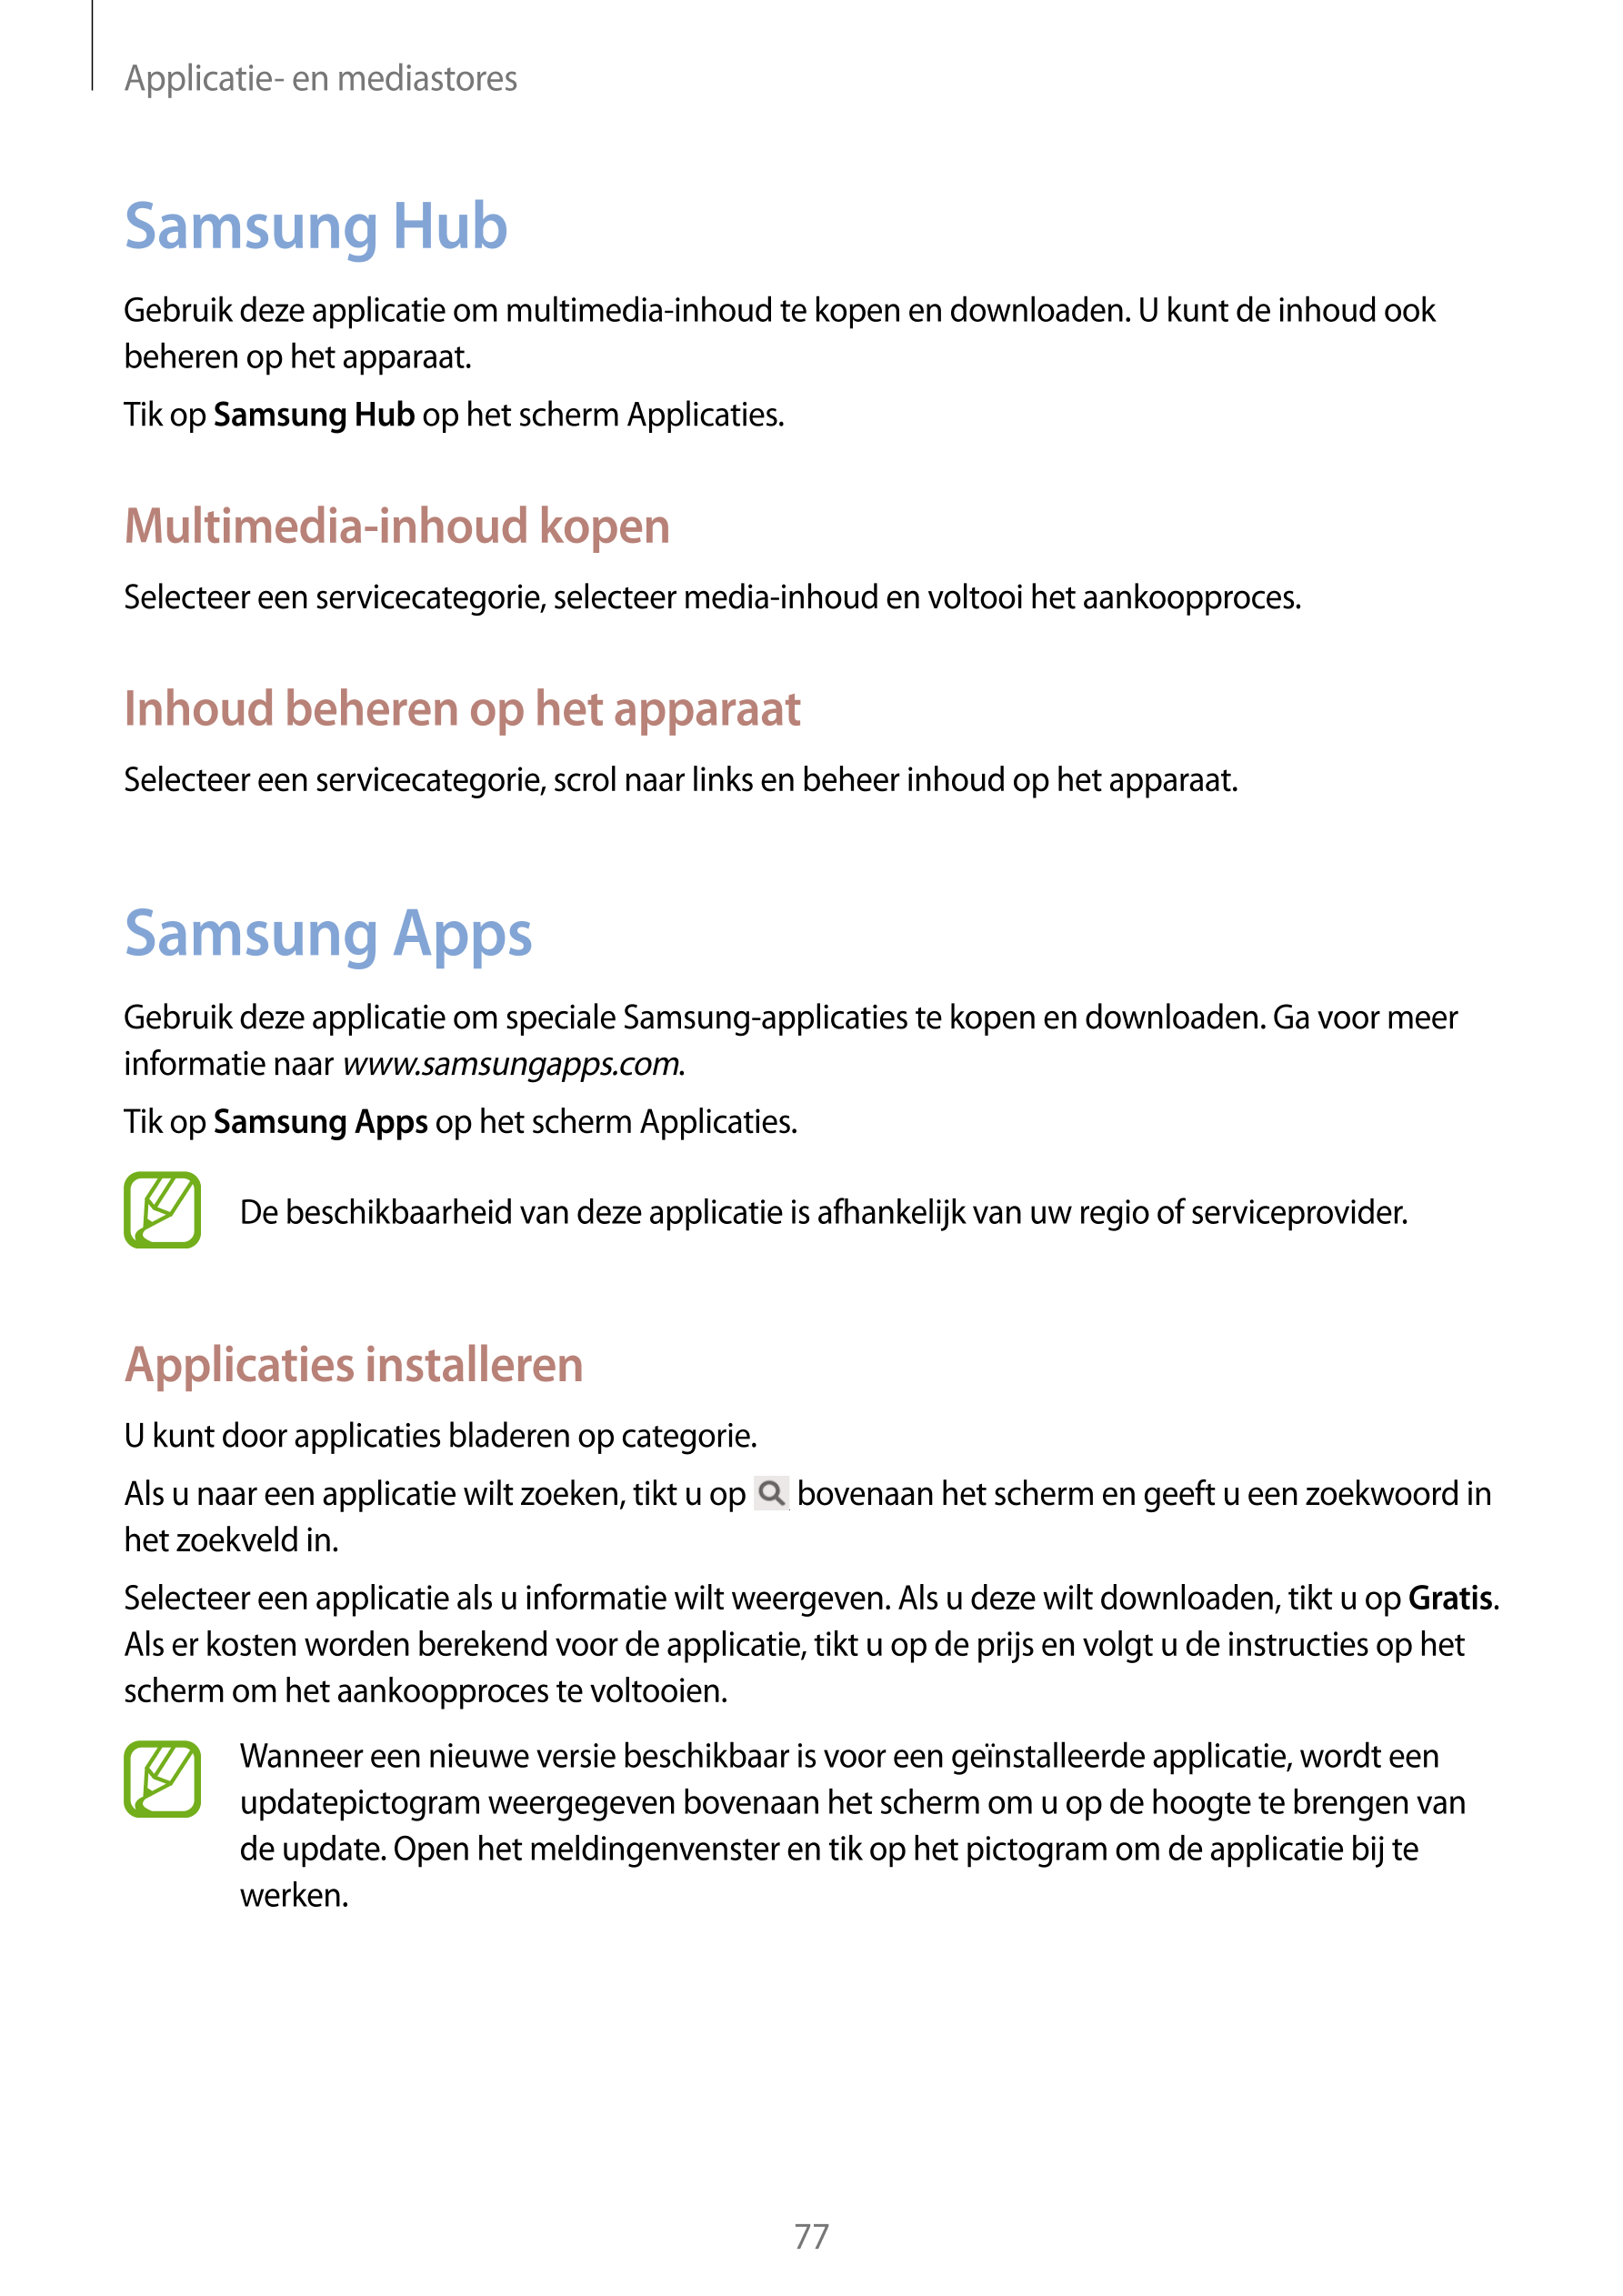 Applicatie- en mediastores
Samsung Hub
Gebruik deze applicatie om multimedia-inhoud te kopen en downloaden. U kunt de inhoud ook